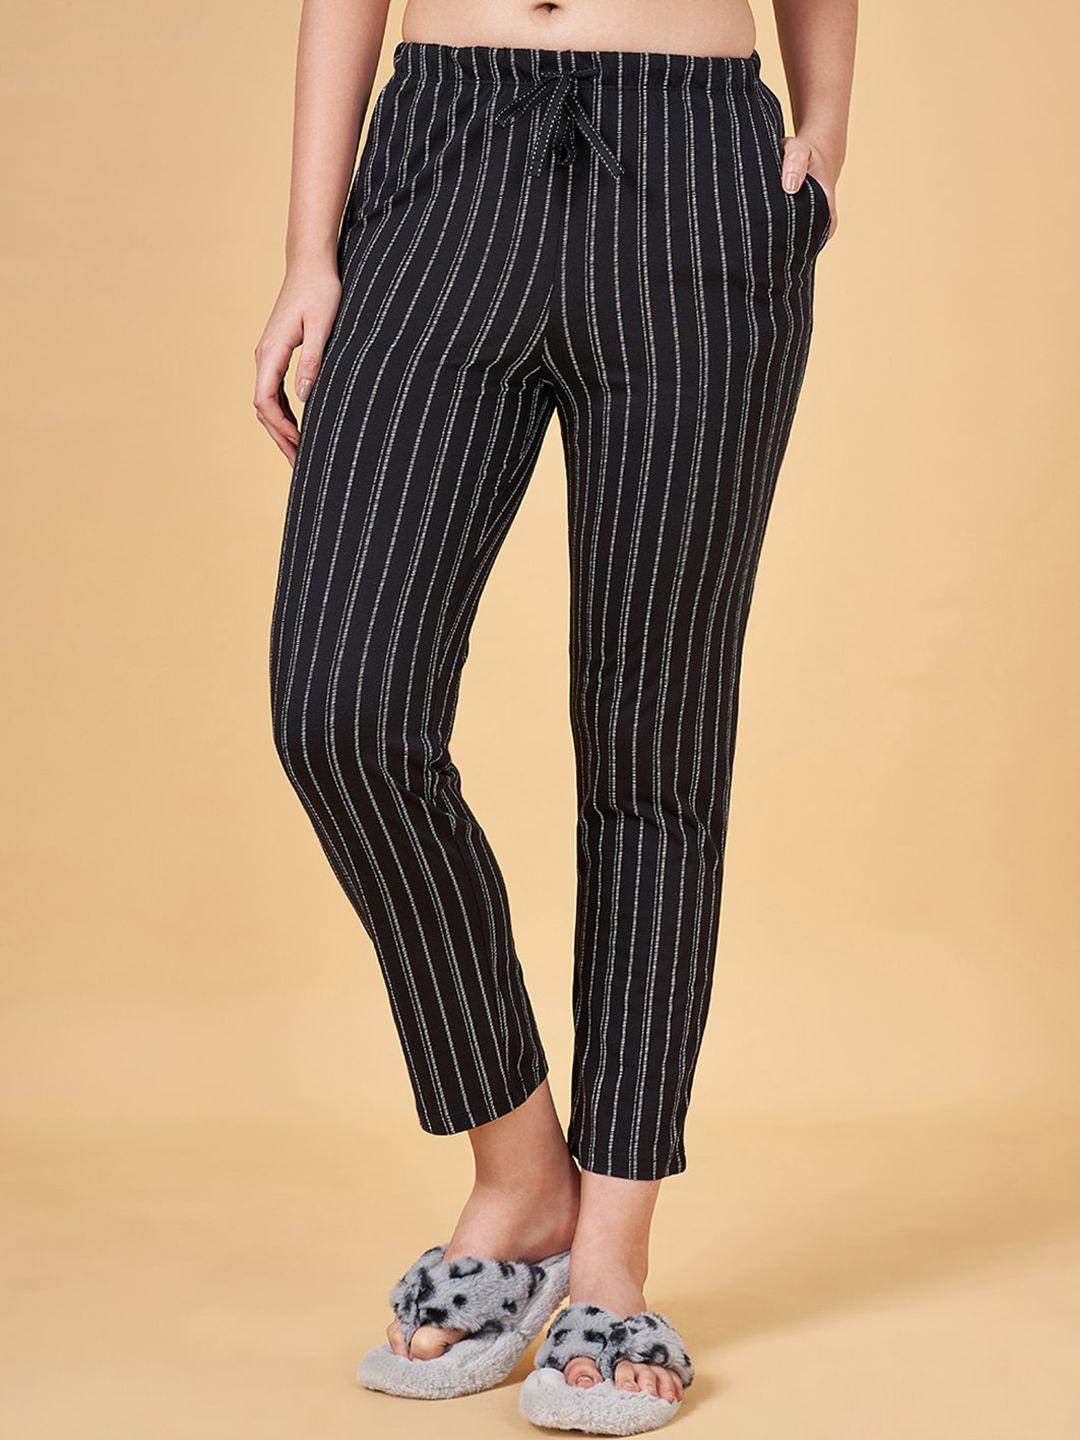 dreamz by pantaloons women striped pure cotton lounge pants